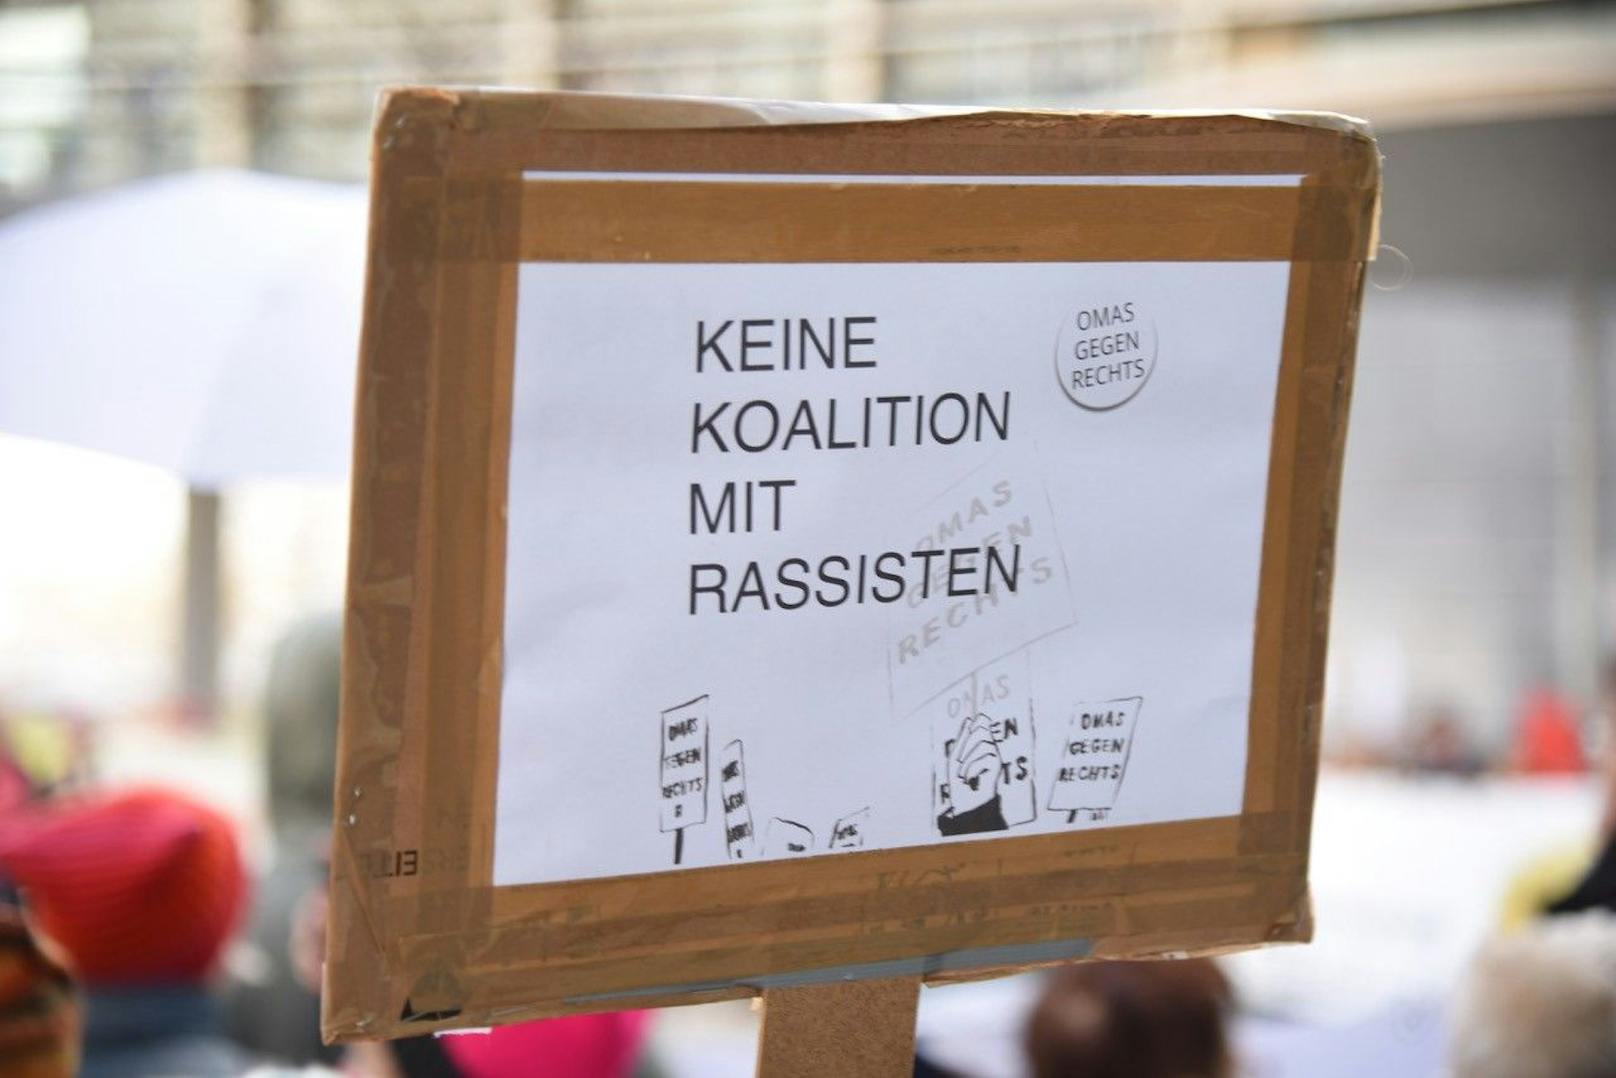 St. Pölten: "Keine Koalition mit Rassisten"